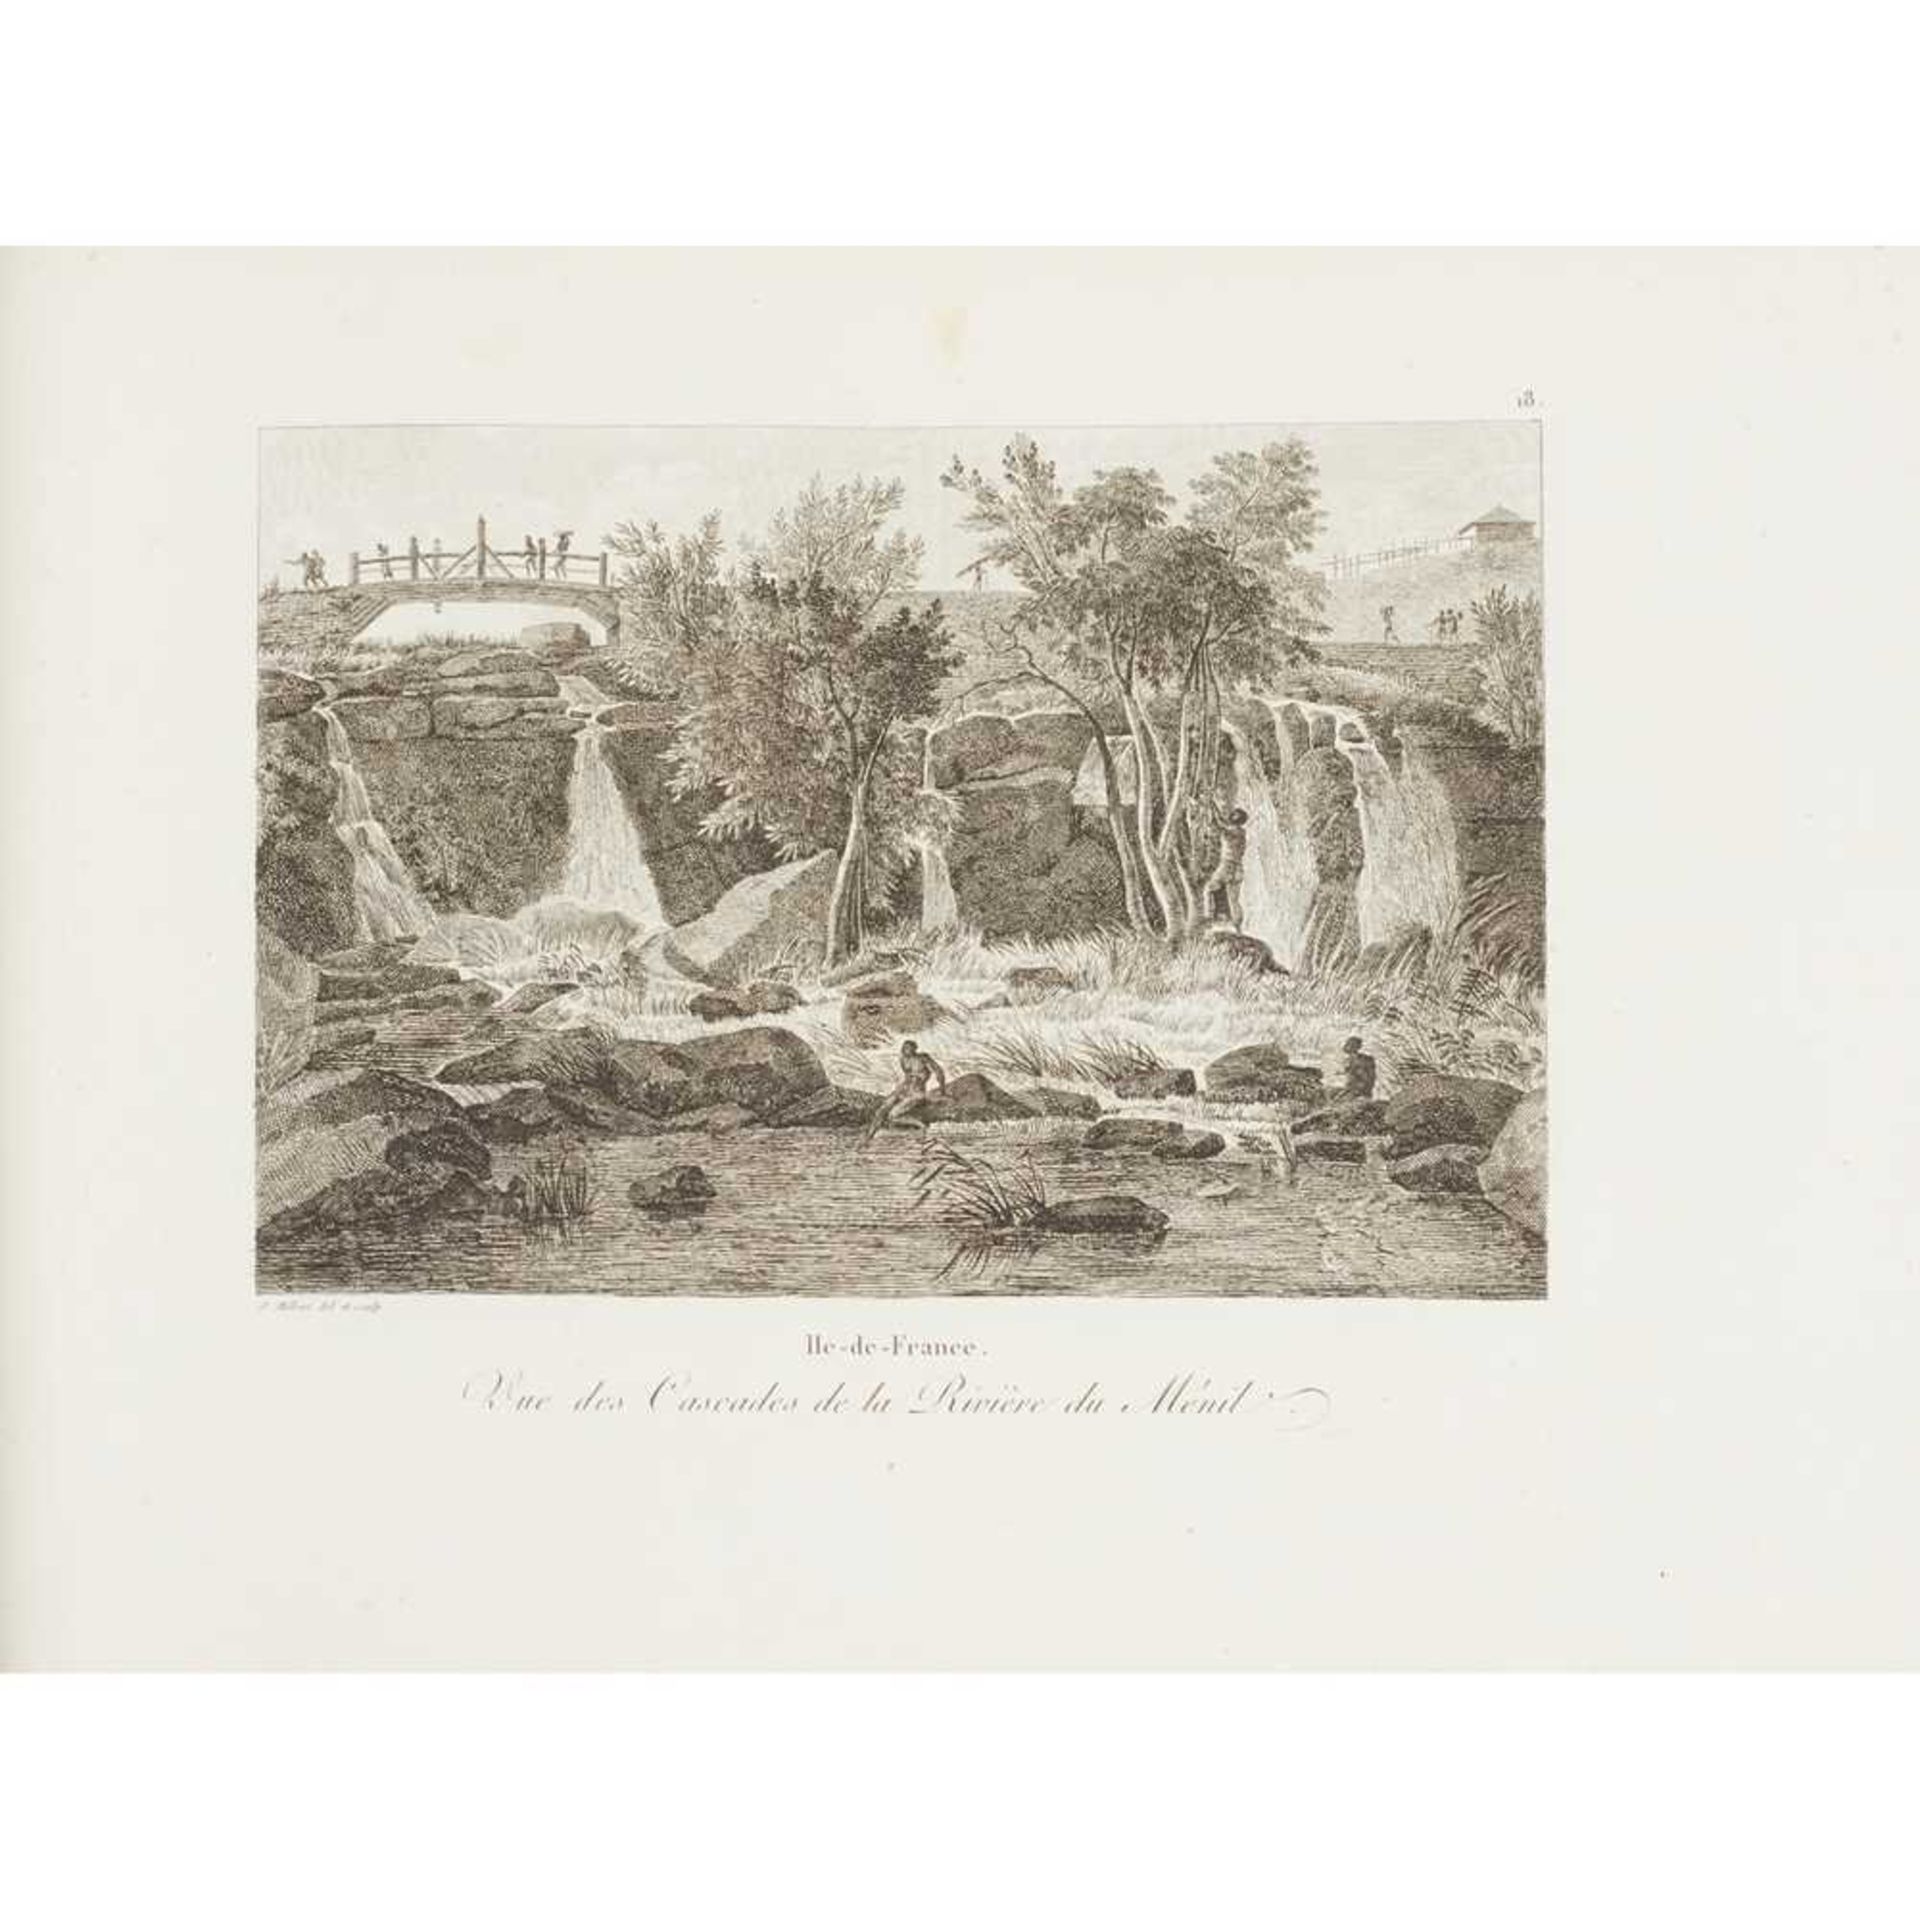 Milbert, M.J. Voyage Pittoresque a L'Ile-de-France au cap de Bonne-Espérance et à l'île de Atlas